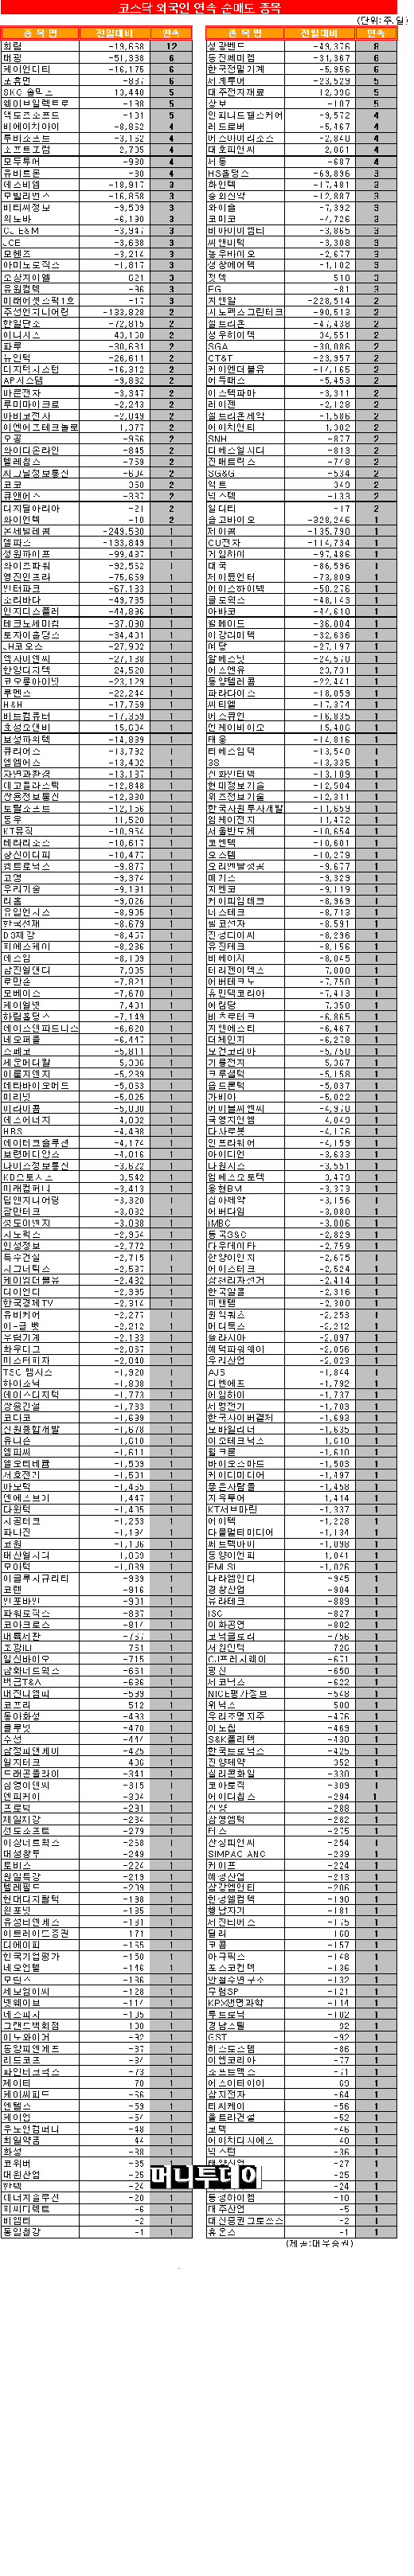 [표]코스닥 외국인 연속 순매도 종목-9일